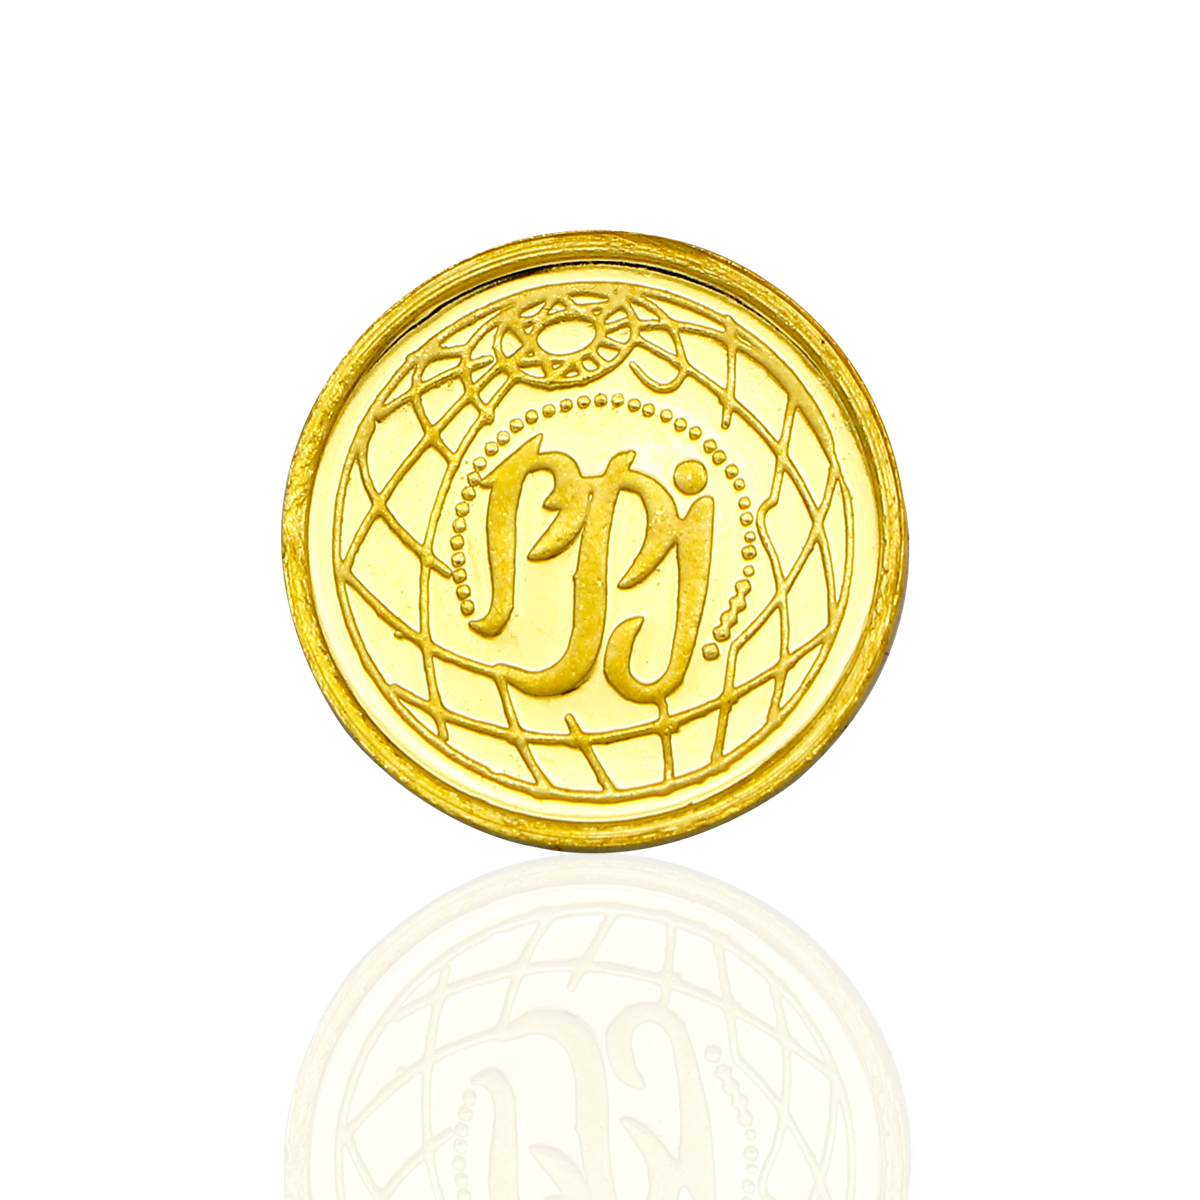 Splendid Gold Coin